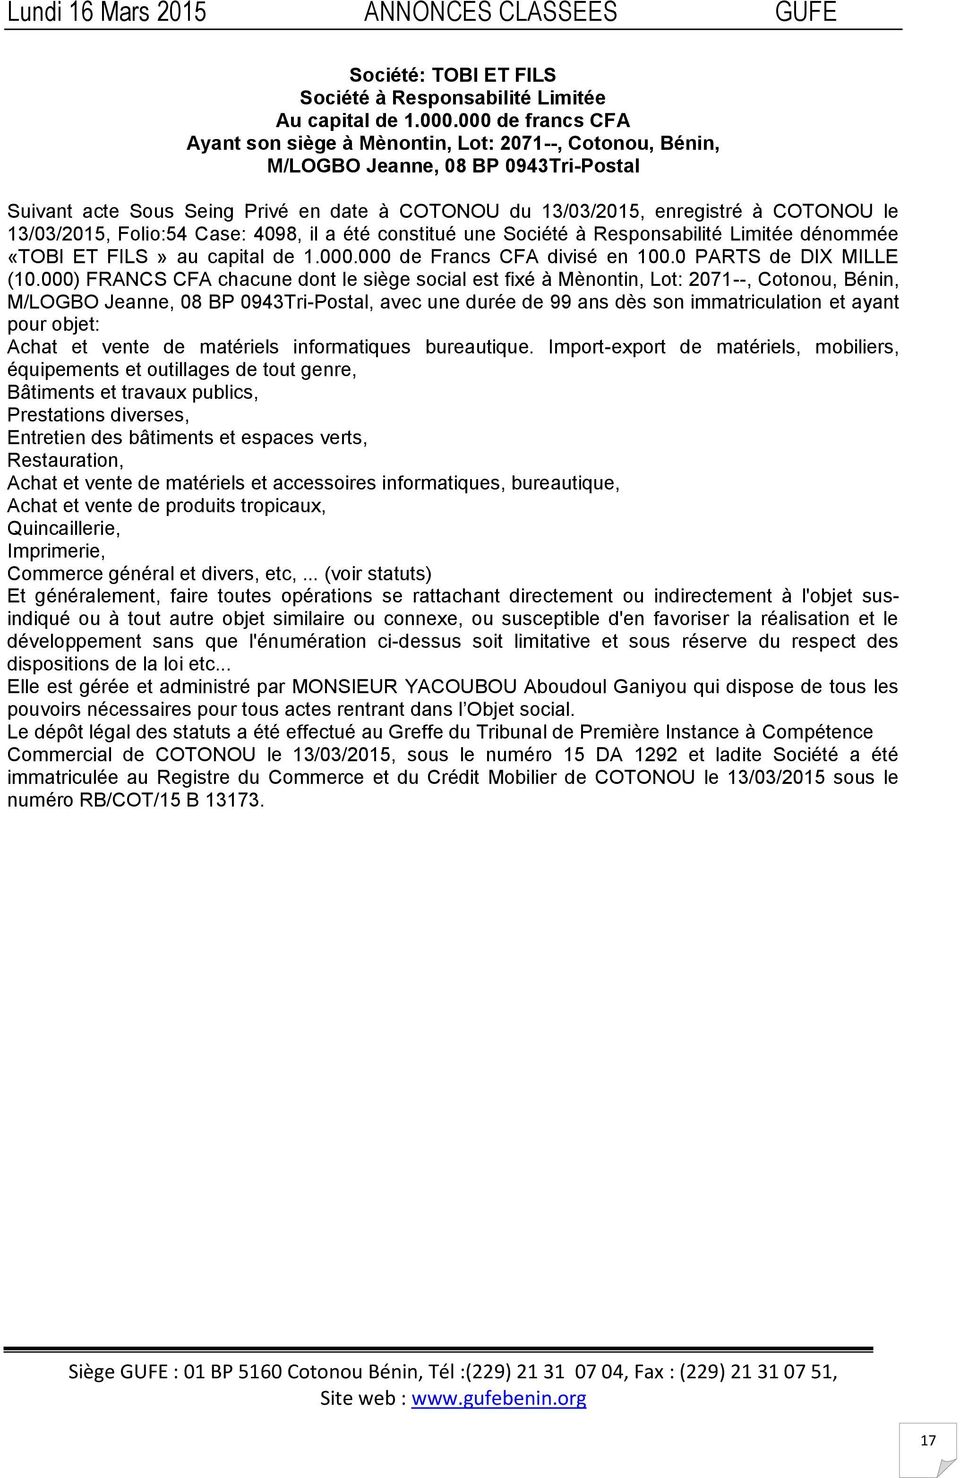 13/03/2015, Folio:54 Case: 4098, il a été constitué une Société à Responsabilité Limitée dénommée «TOBI ET FILS» au capital de 1.000.000 de Francs CFA divisé en 100.0 PARTS de DIX MILLE (10.